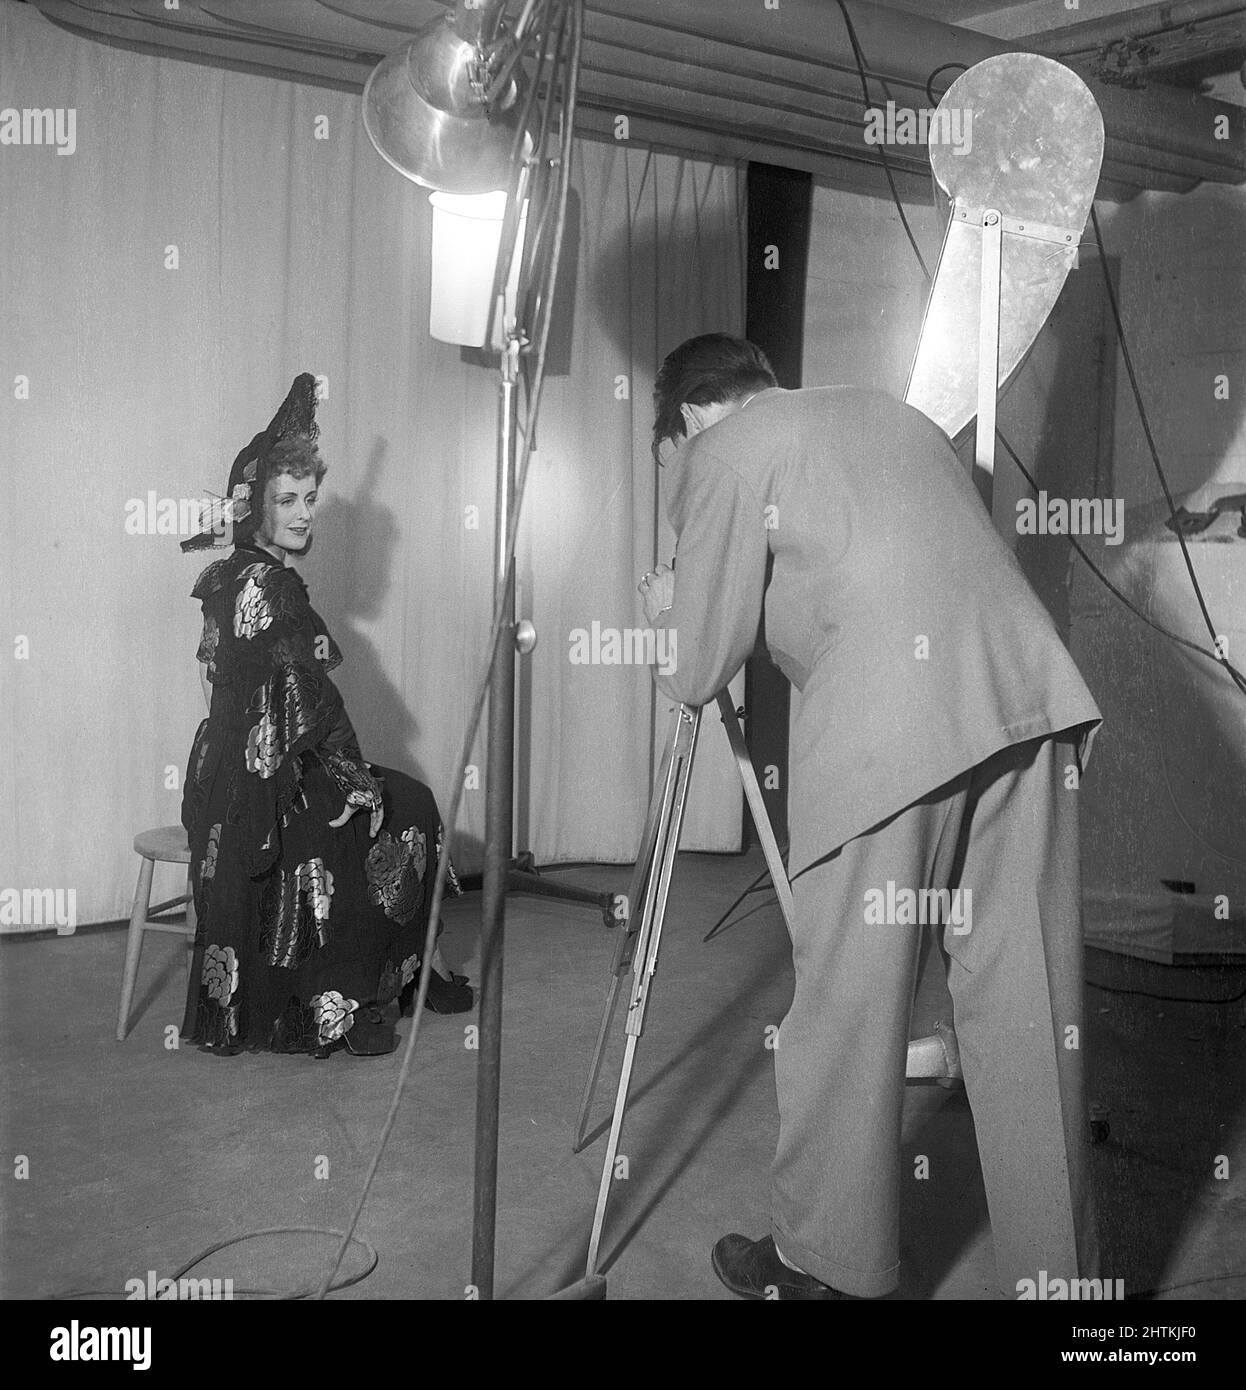 1950s Modefotograf und Model. Eine junge Frau in einem Fotostudio und der Fotograf fokussieren sich mit seiner Kamera auf sie. Licht und Hintergrund sind so angeordnet, dass bestmögliche Bilder aufgenommen werden. Schweden 1951 Kristoffersson Ref. BE14-8 Stockfoto